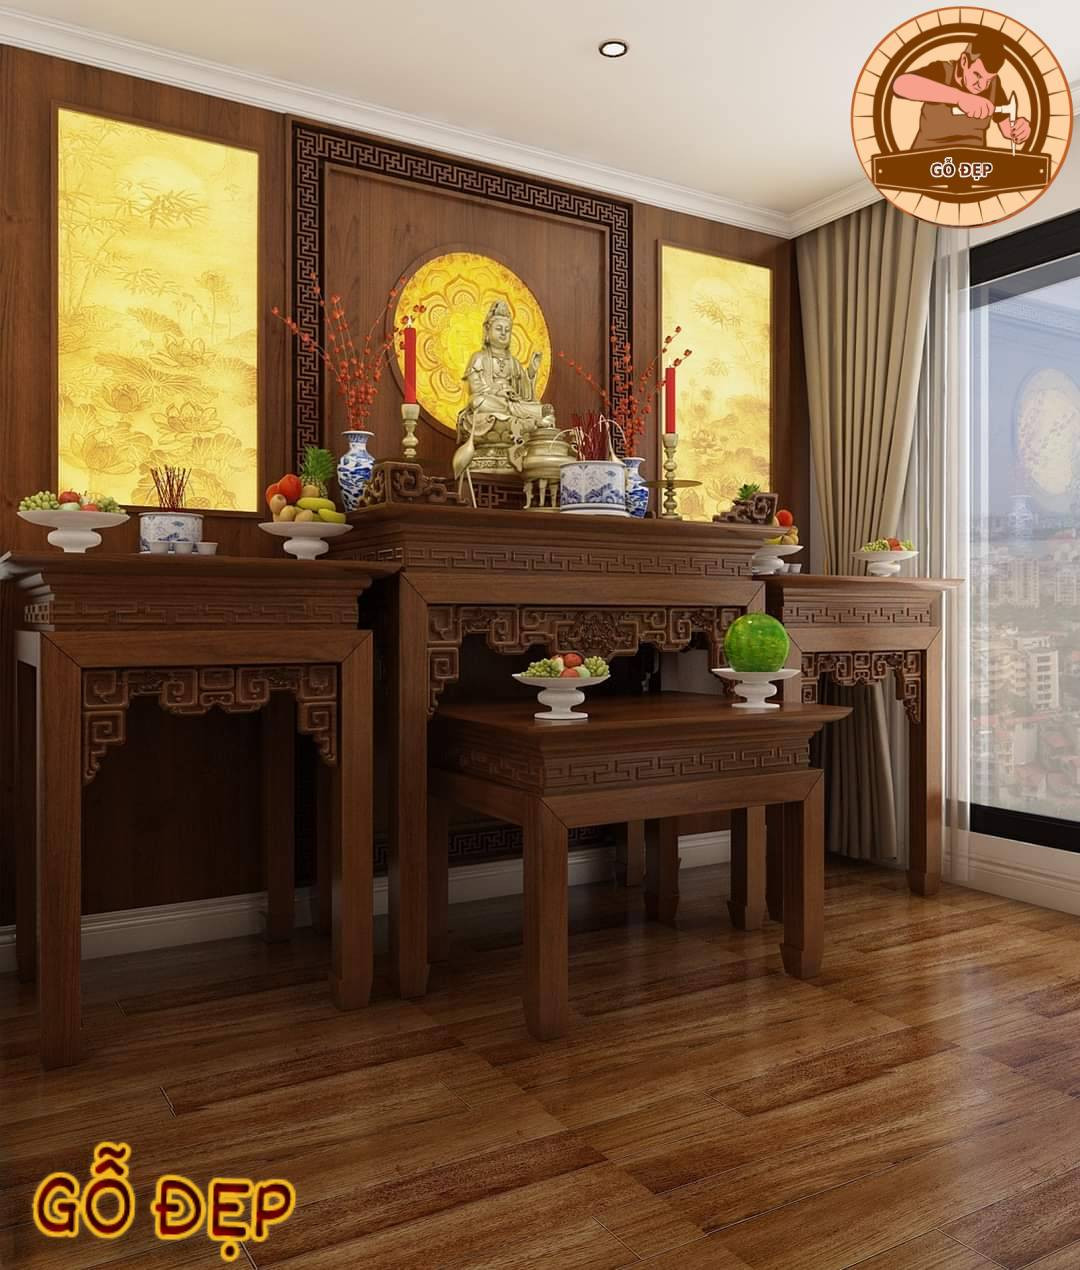 Mẫu bàn thờ Phật và gia tiên sang trọng, thiết kế đơn giản